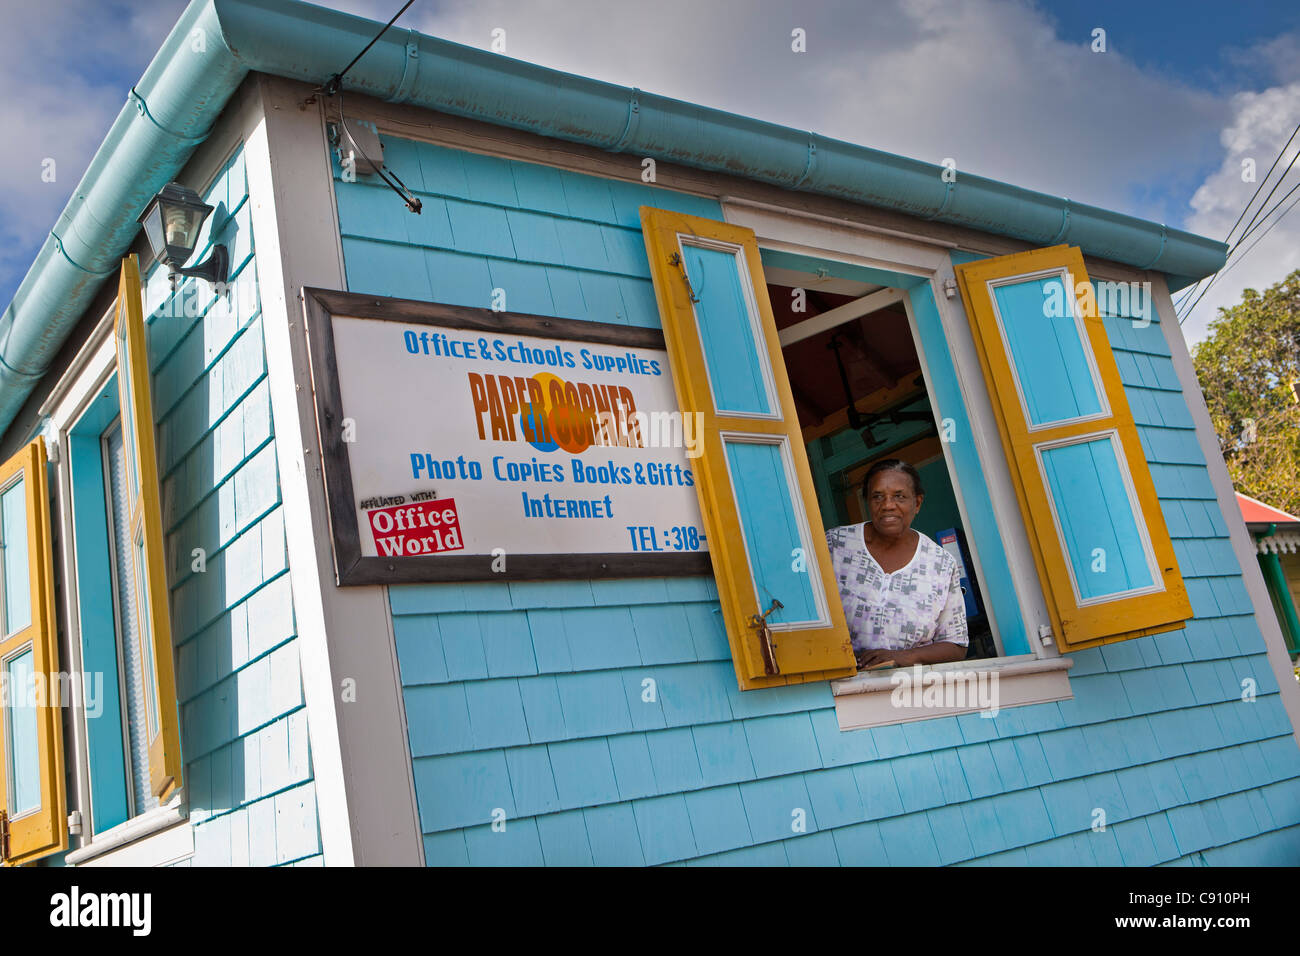 Den Niederlanden, Oranjestad, Sint Eustatius Insel, Niederländische Karibik. Blick aus Fenster von Schreibwarengeschäft Frau. Stockfoto